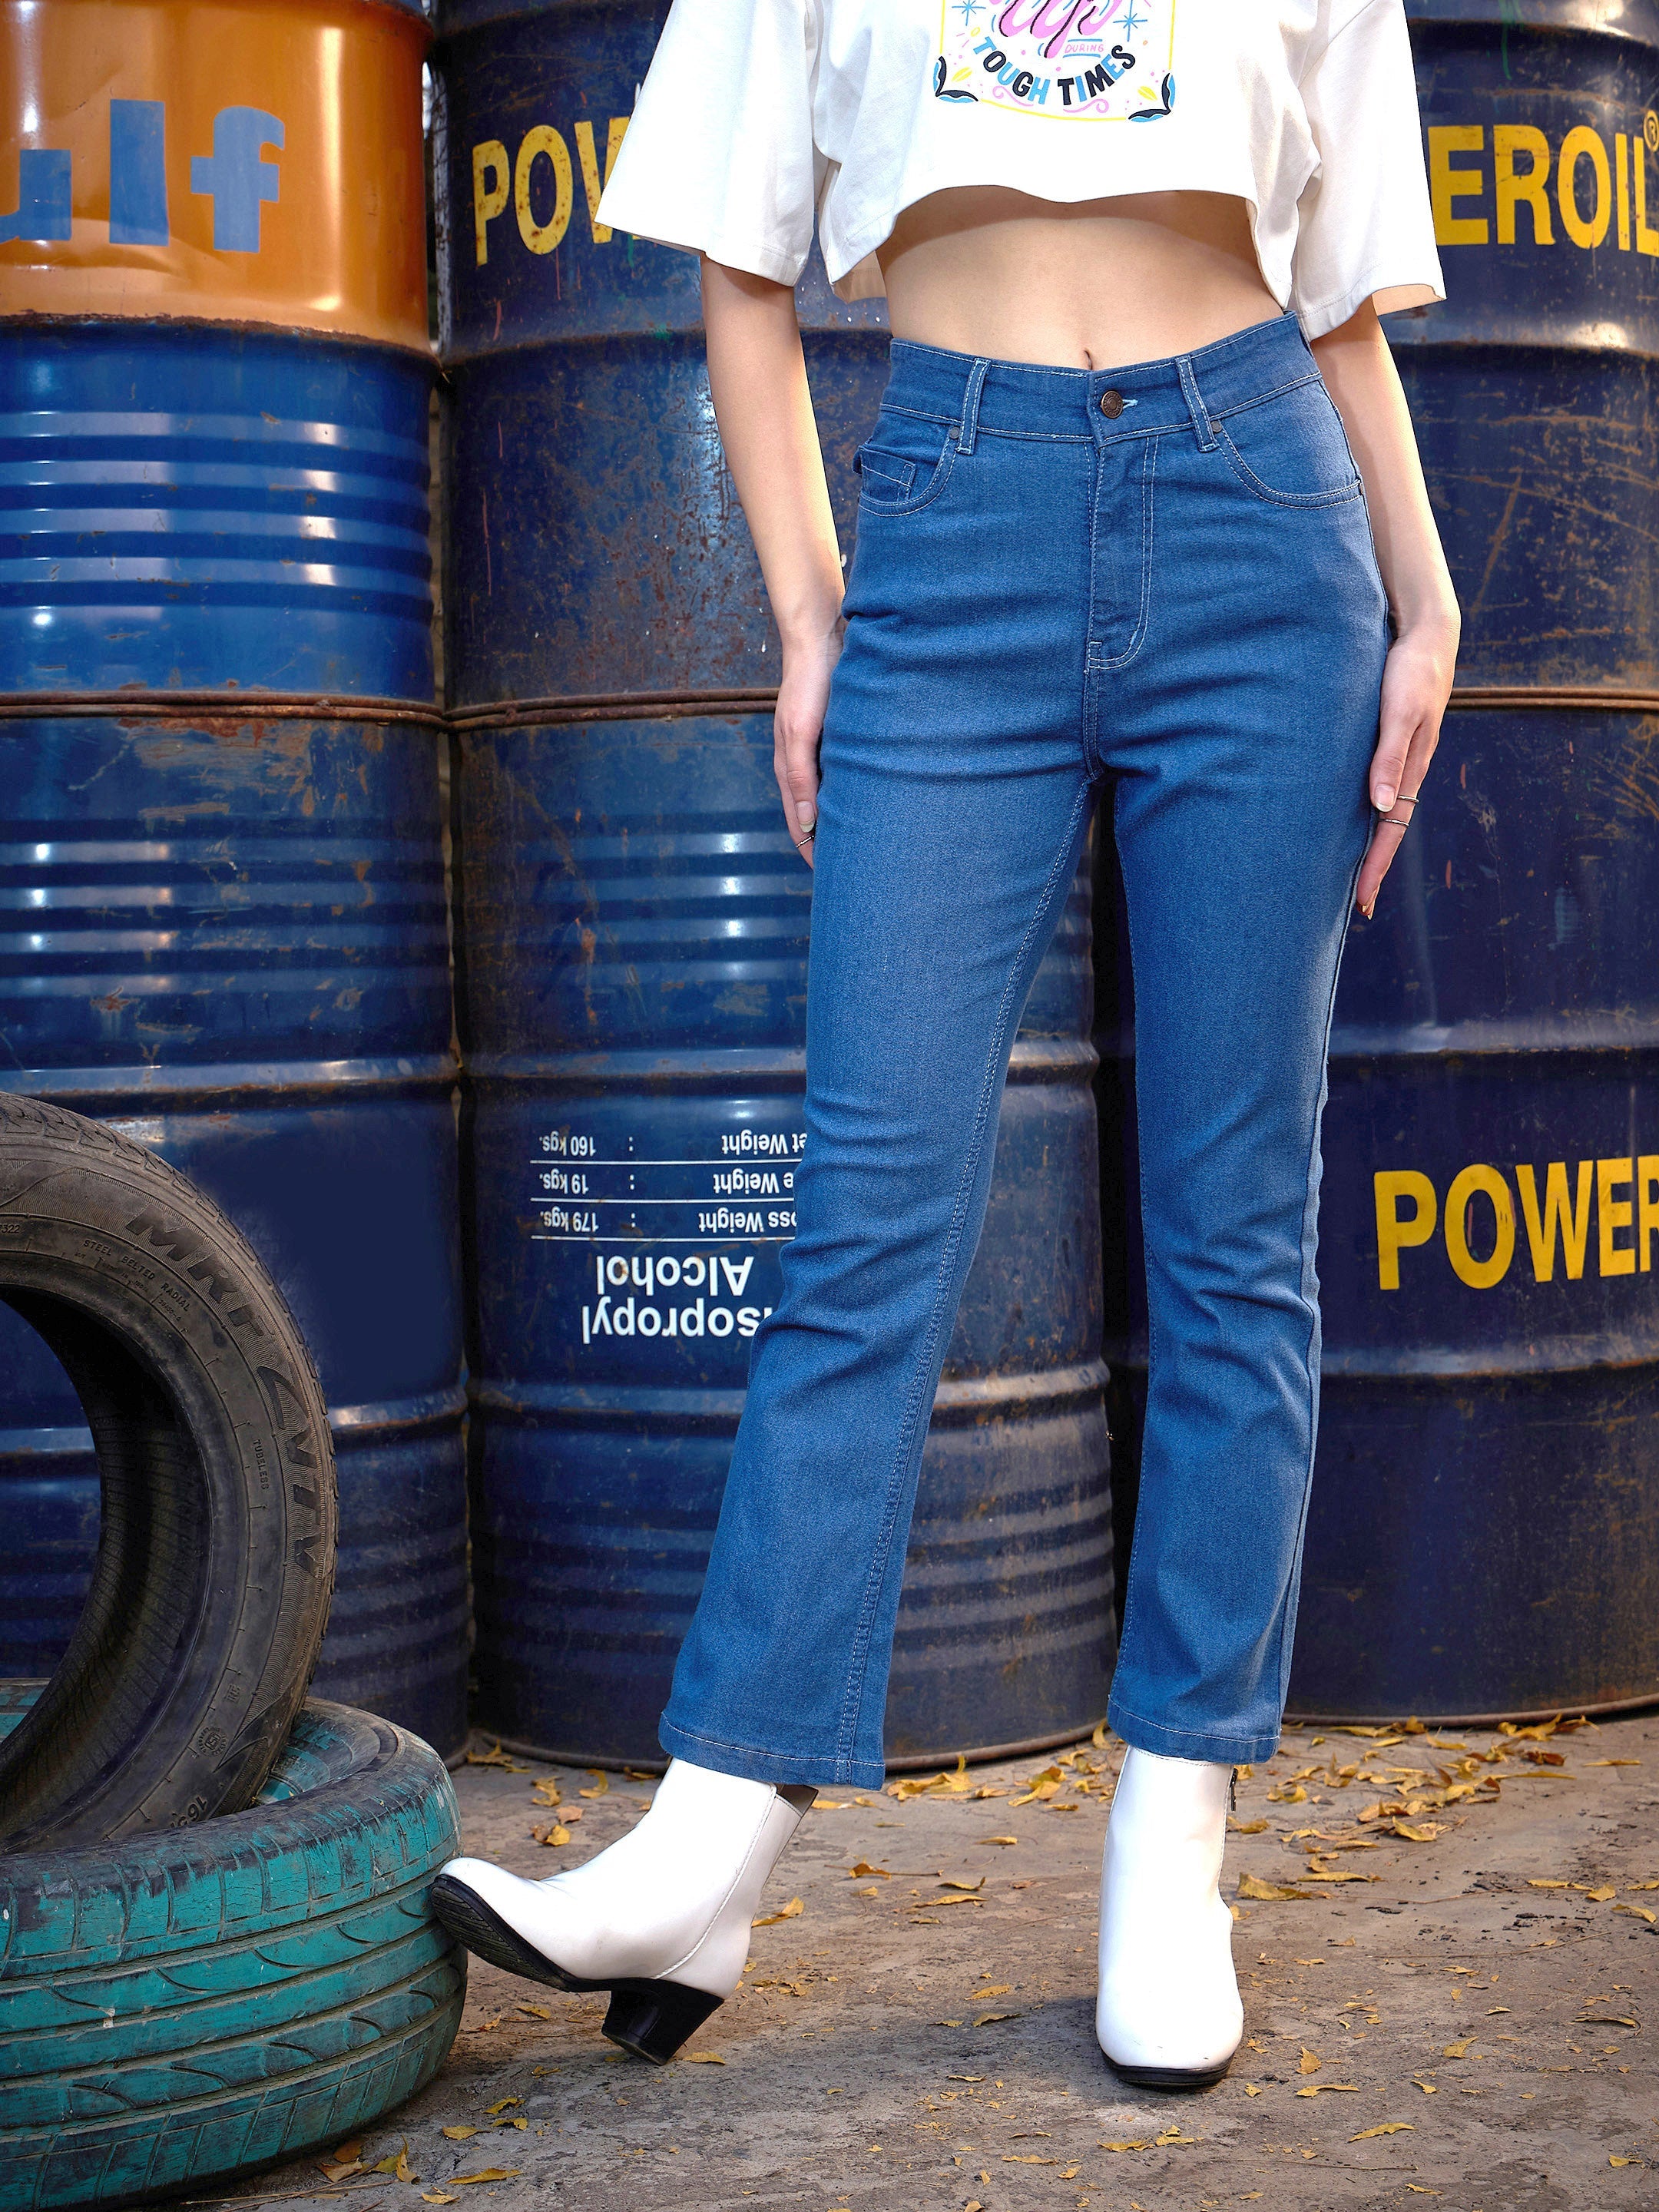 ドライコ＝ン レディース パンツ FAR Bootcut Jeans Blue ボトムス